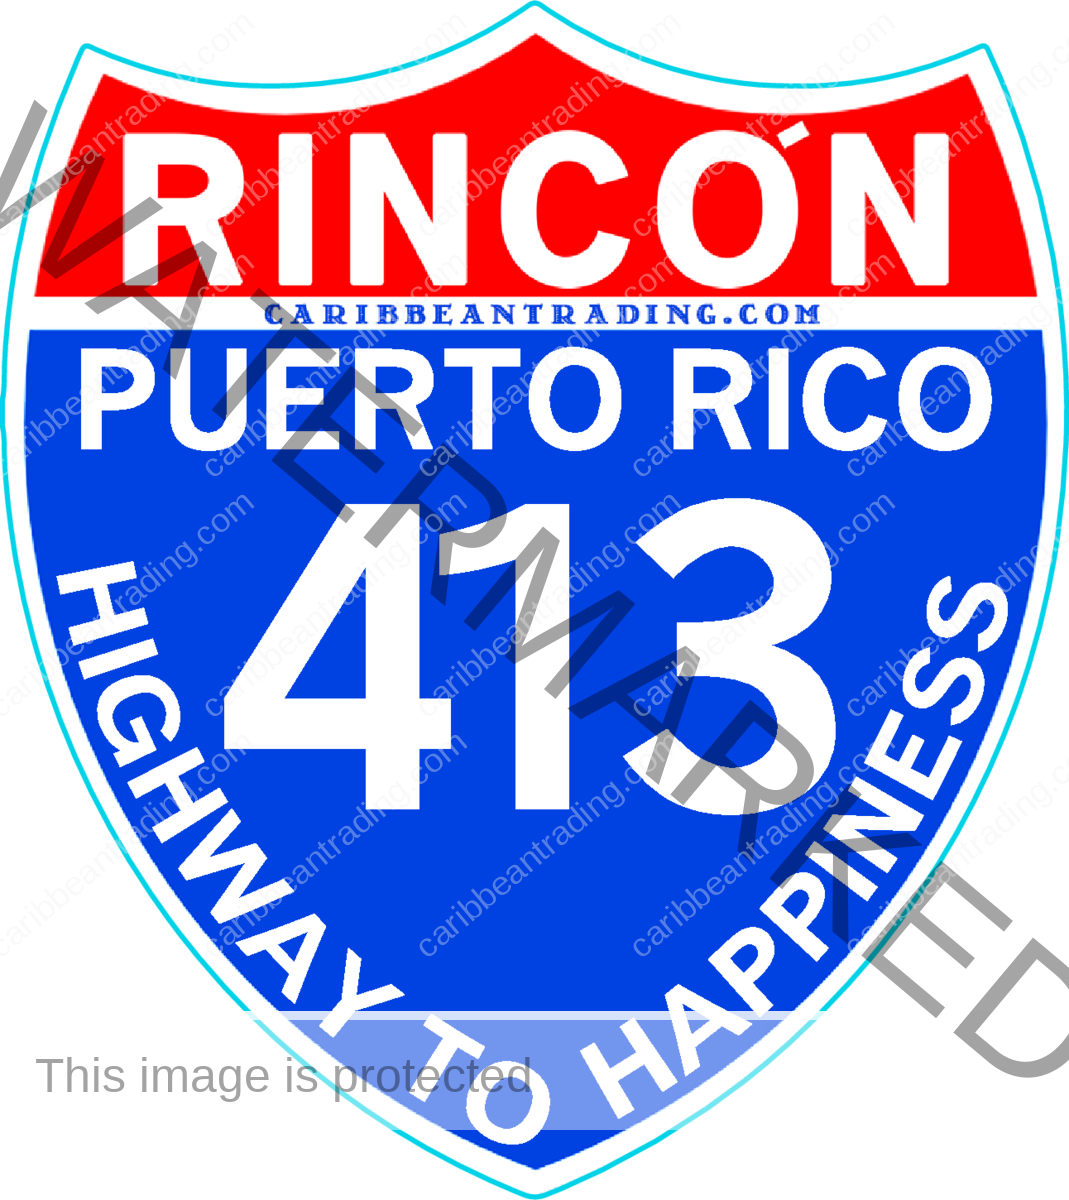 Rincón 413 Sticker